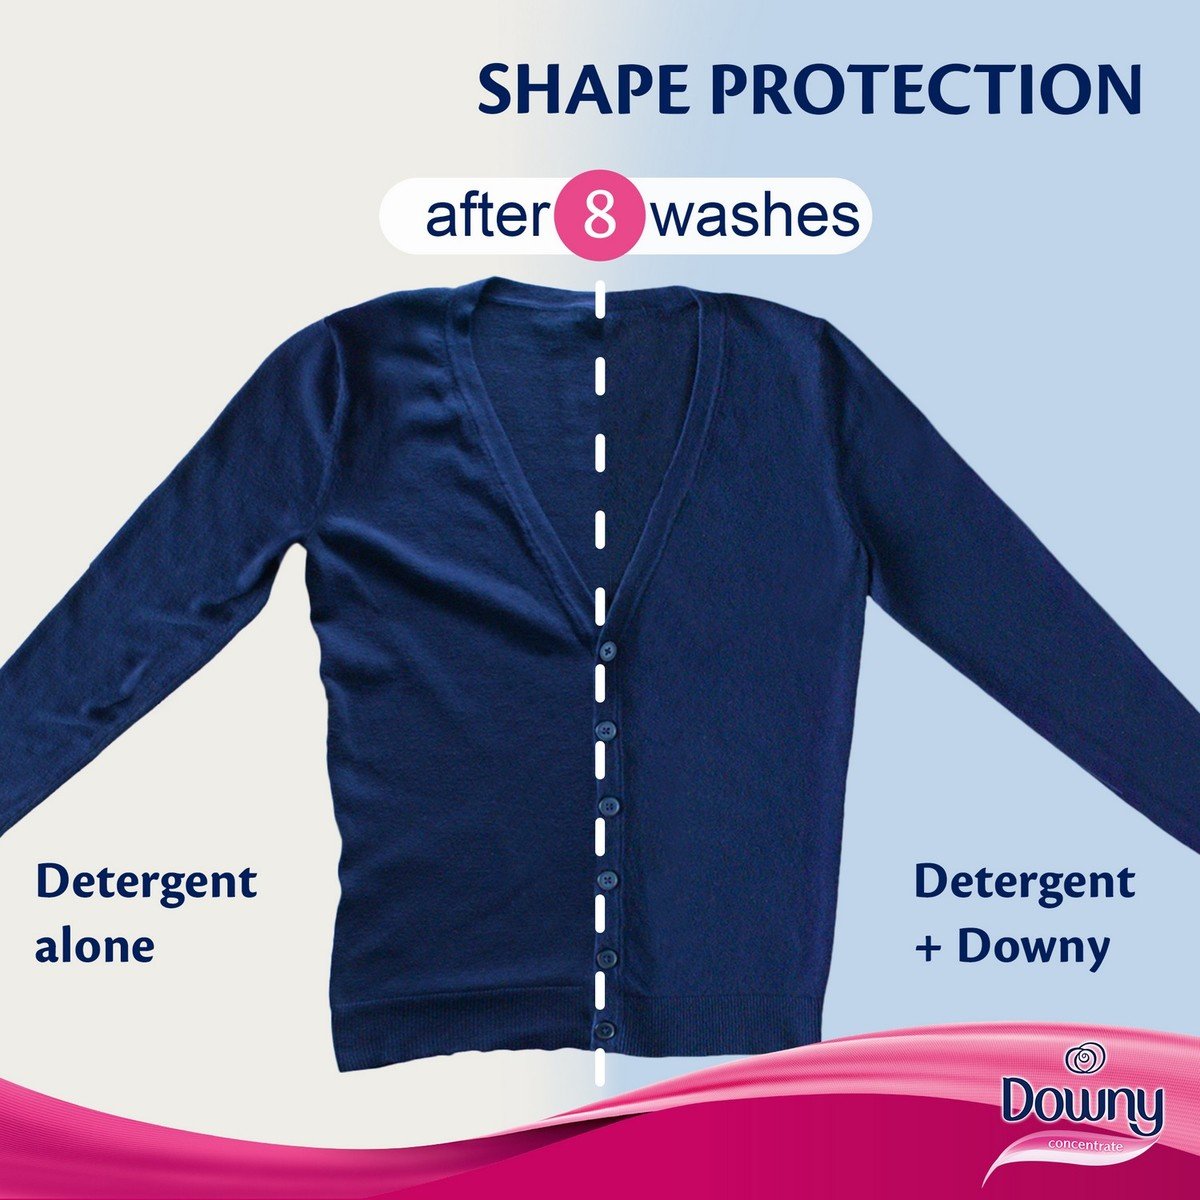 Downy Stay Fresh Regular Fabric Softener 3Litre